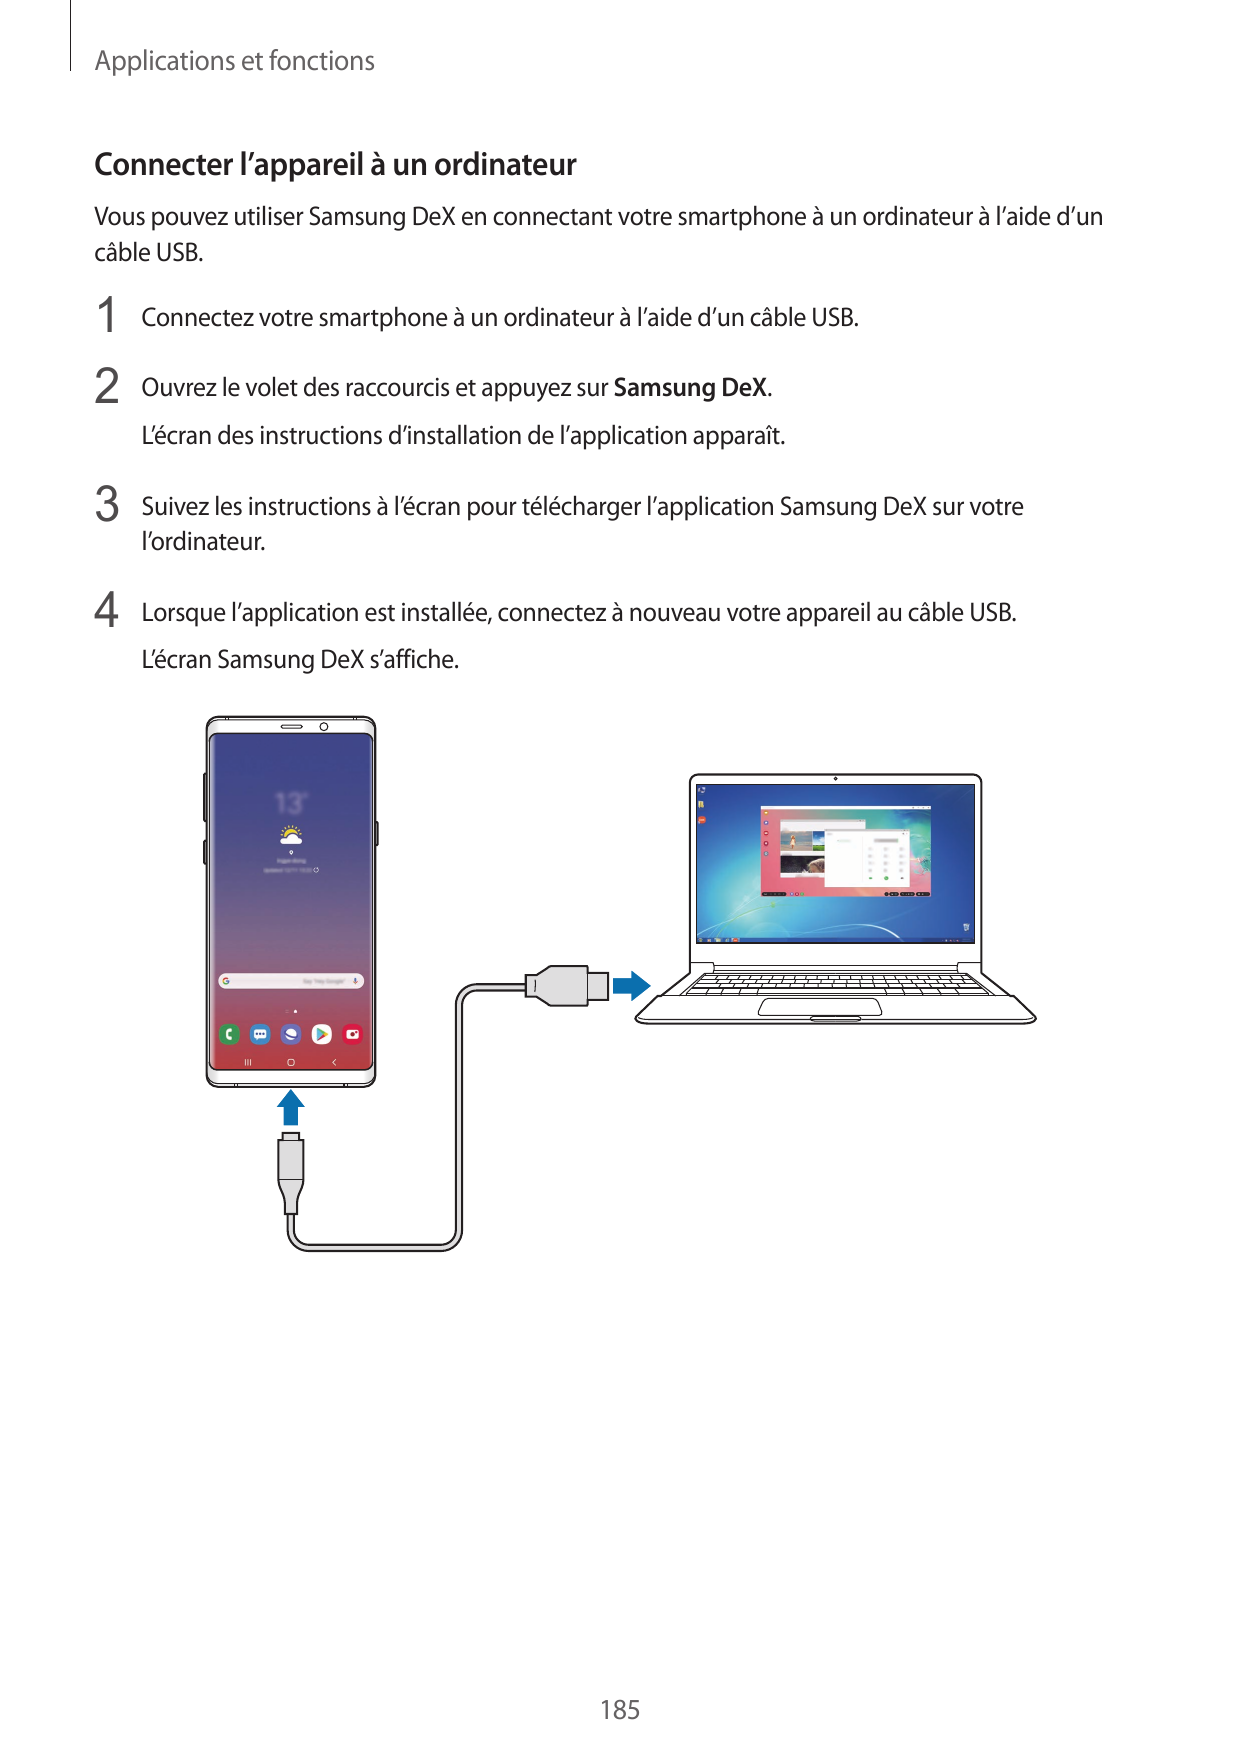 Applications et fonctionsConnecter l’appareil à un ordinateurVous pouvez utiliser Samsung DeX en connectant votre smartphone à u